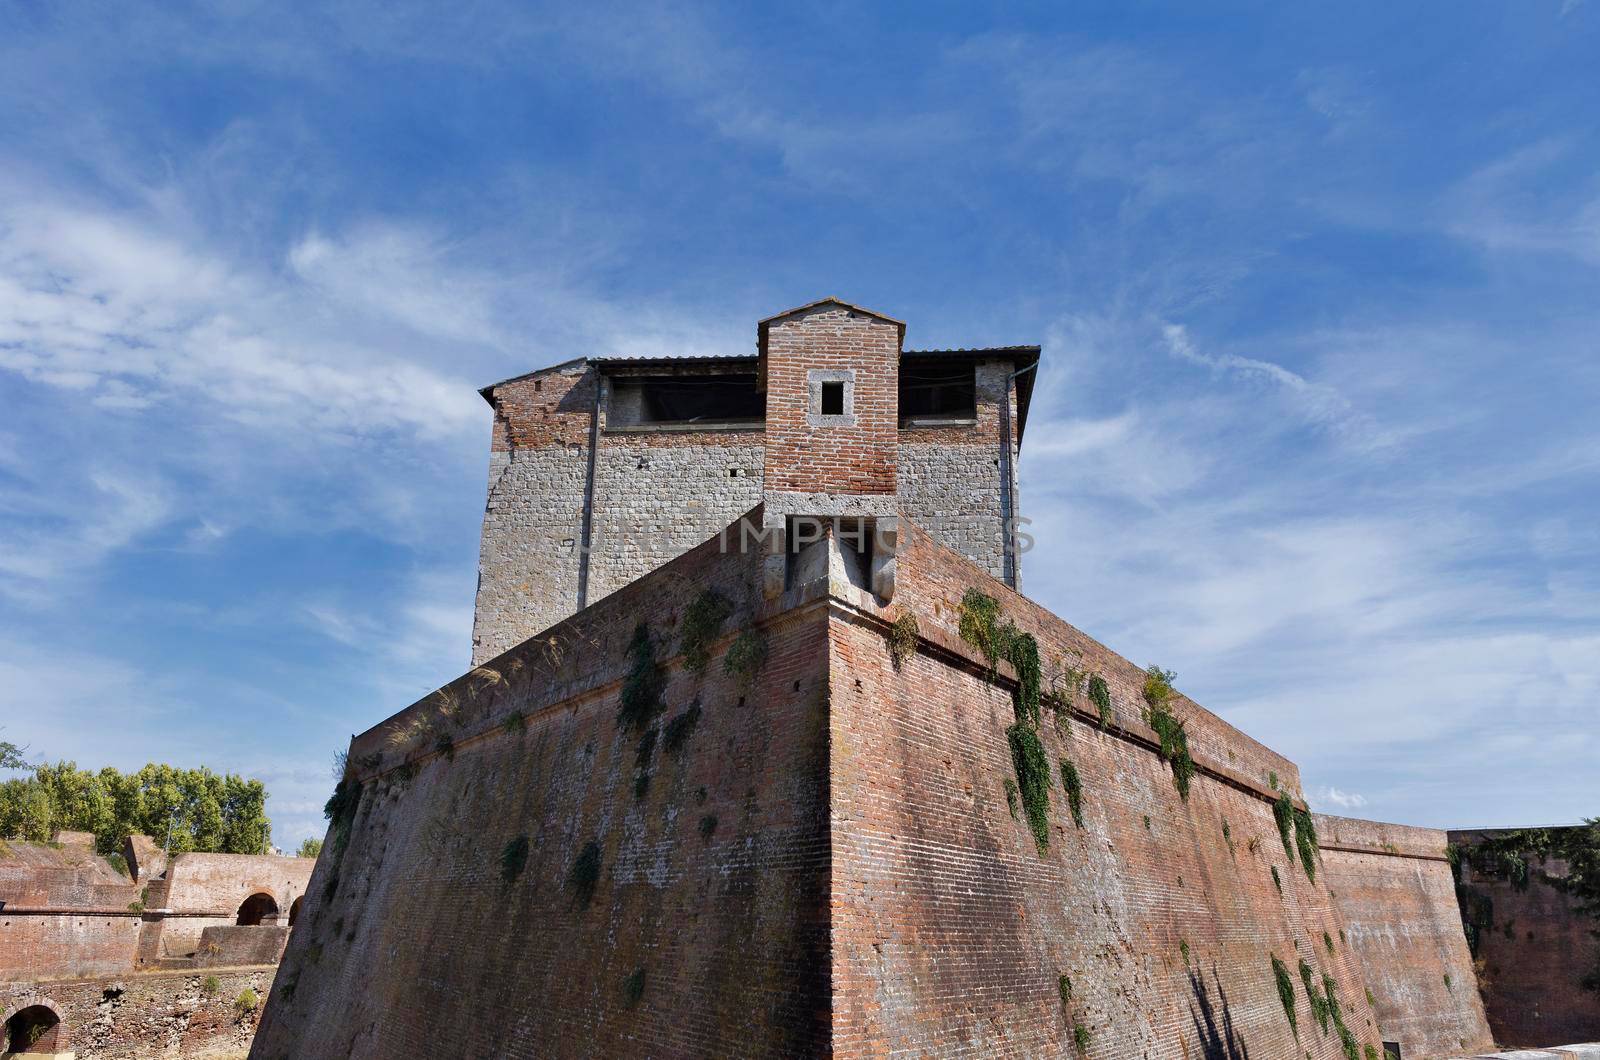 Fortified walls , Grosseto , Italy by victimewalker